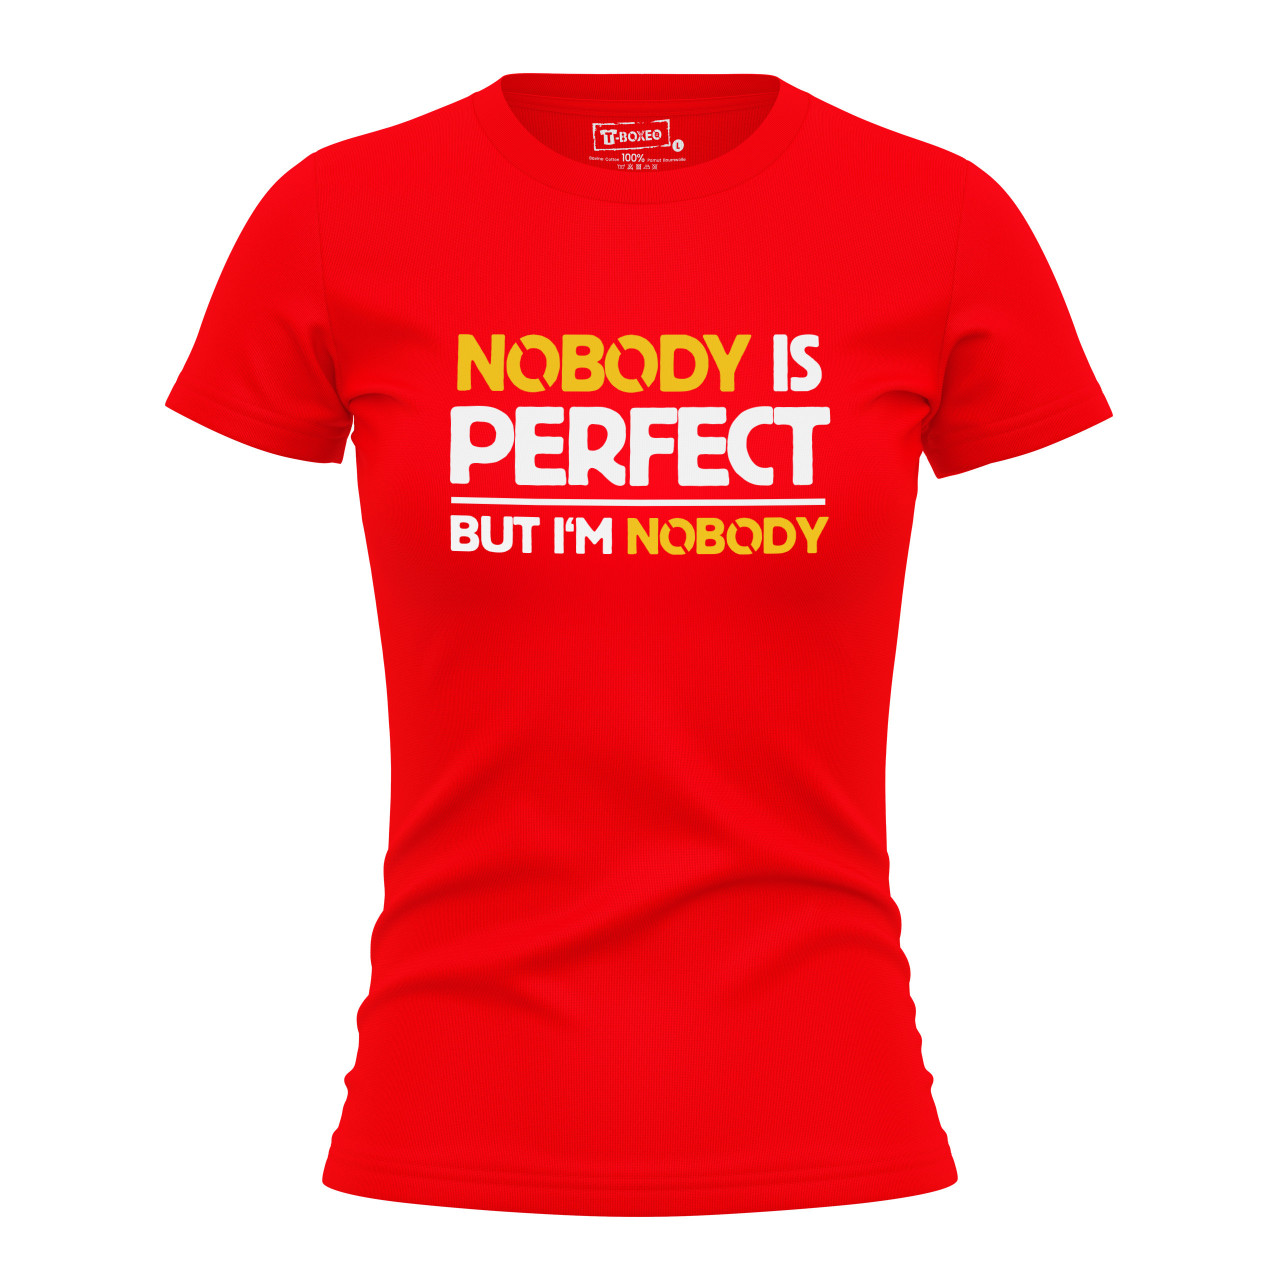 Dámská tričko s potiskem “Nobody is perfect”